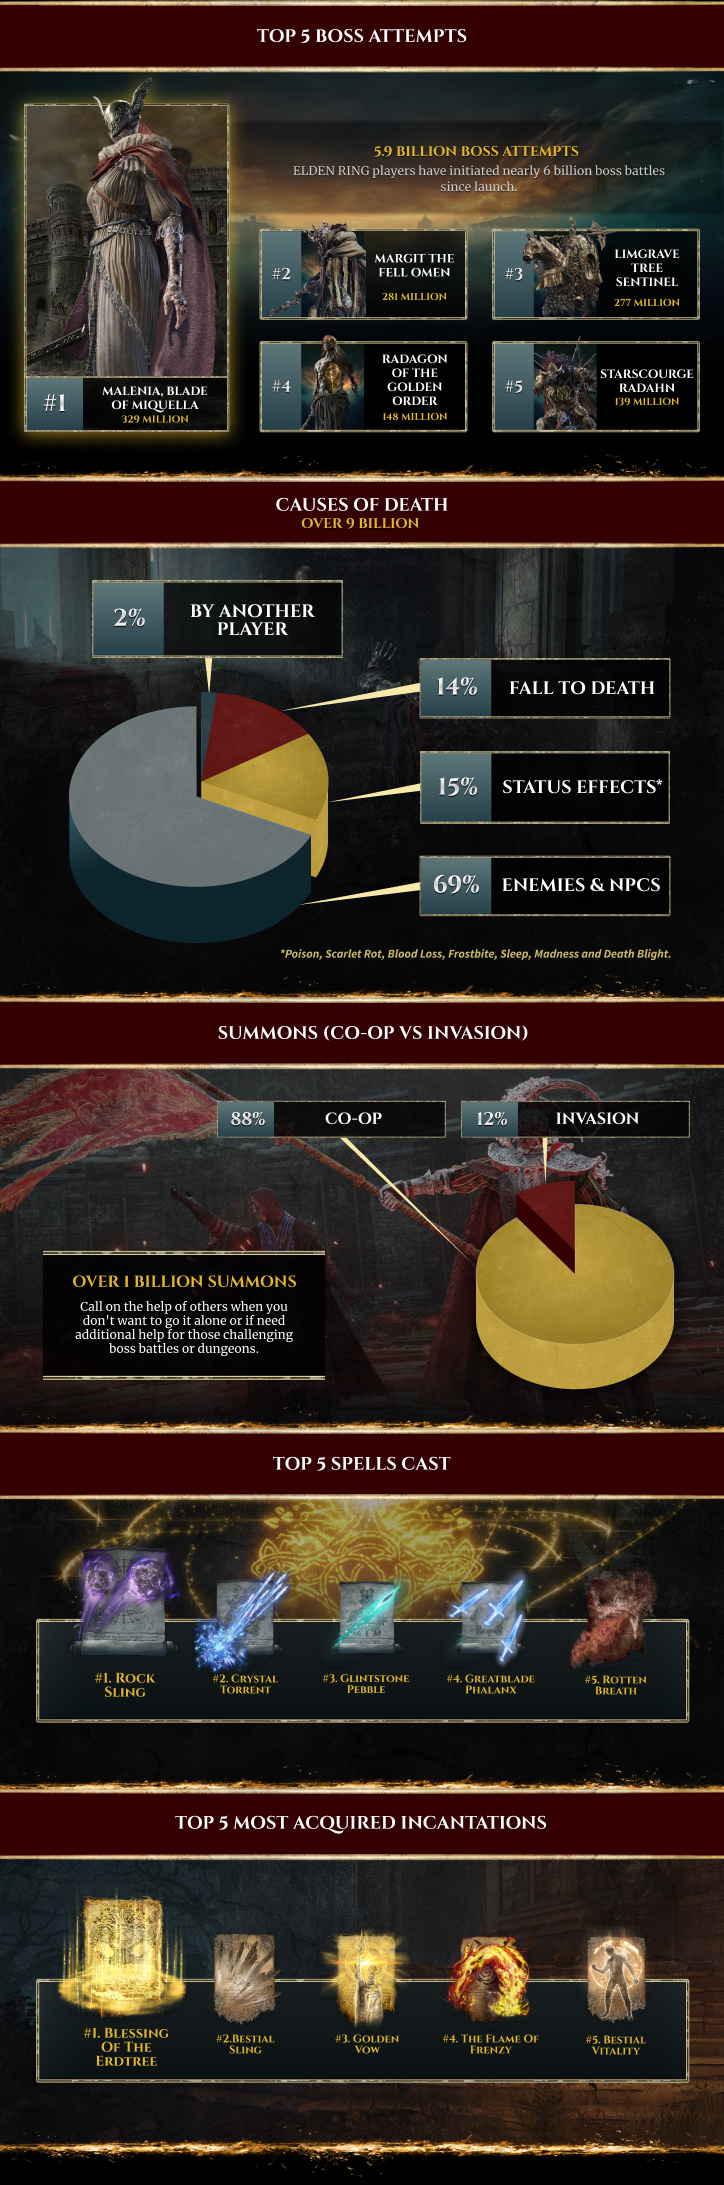 《艾爾登法環》遊戲統計數據：共挑戰了59億次BOSS